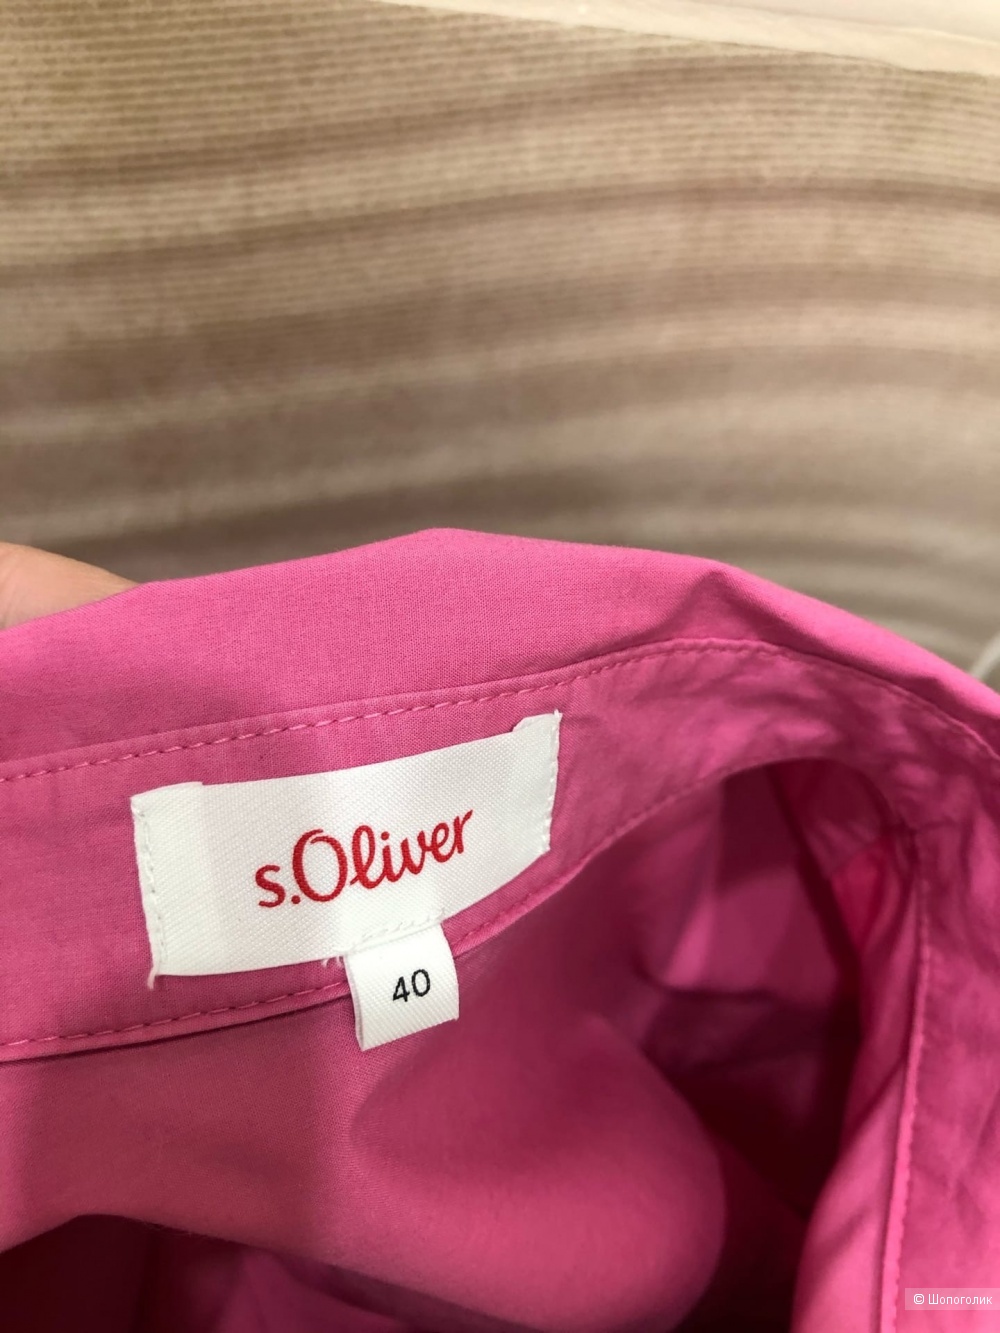 Рубашка S. Oliver.Размер S-L.